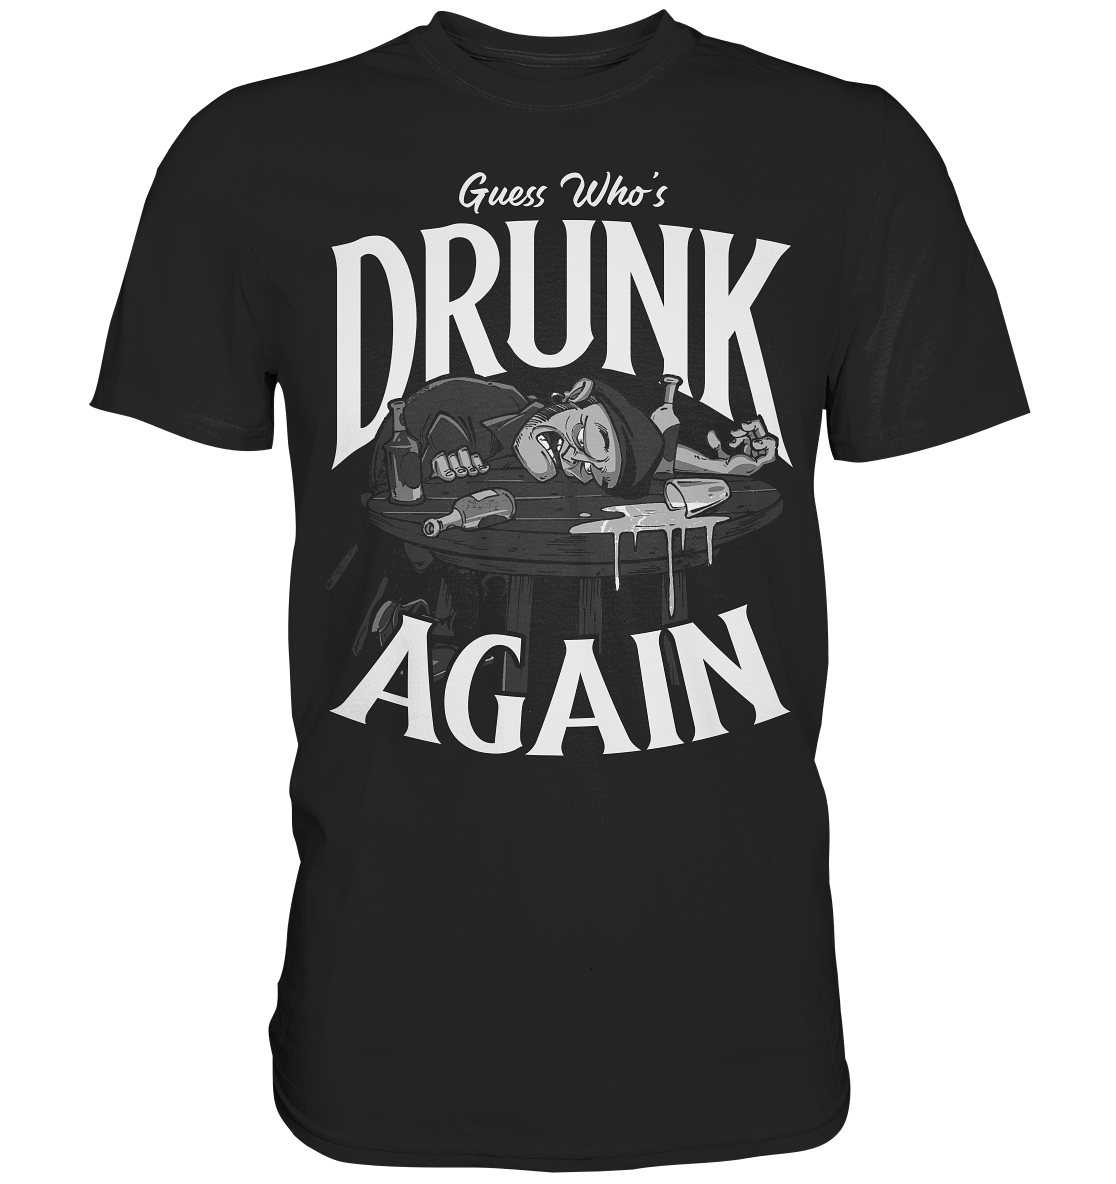 Guess Who's Drunk Again - Premium Shirt